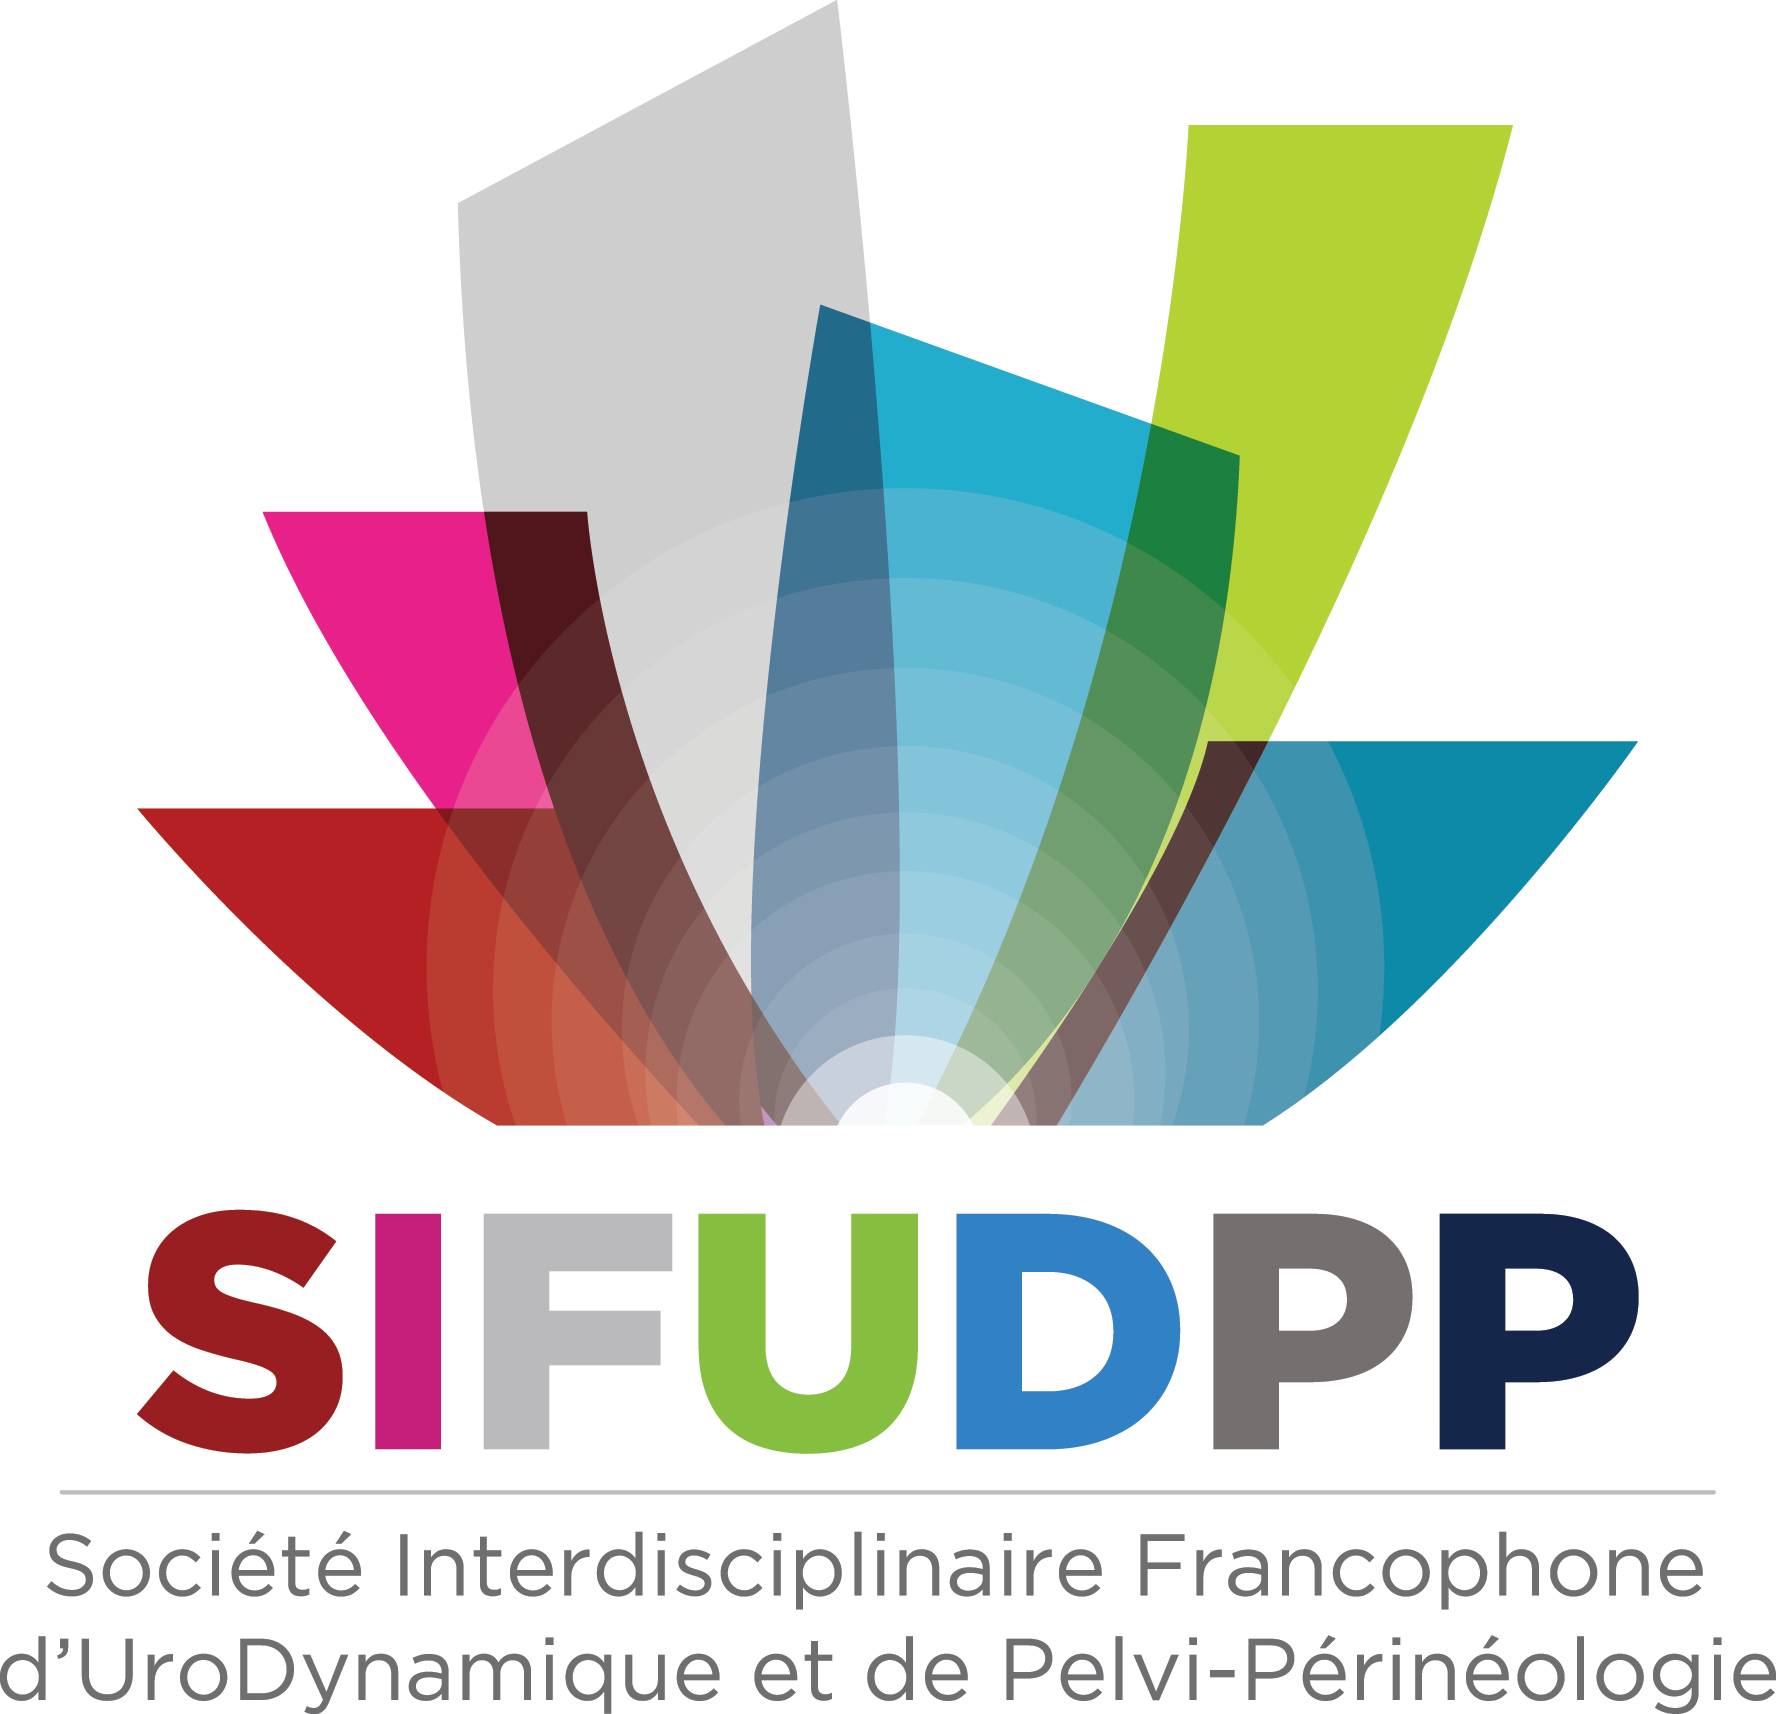 SIFUD-PP Paris 2016 : Faut-il se méfier des dysuriques ?